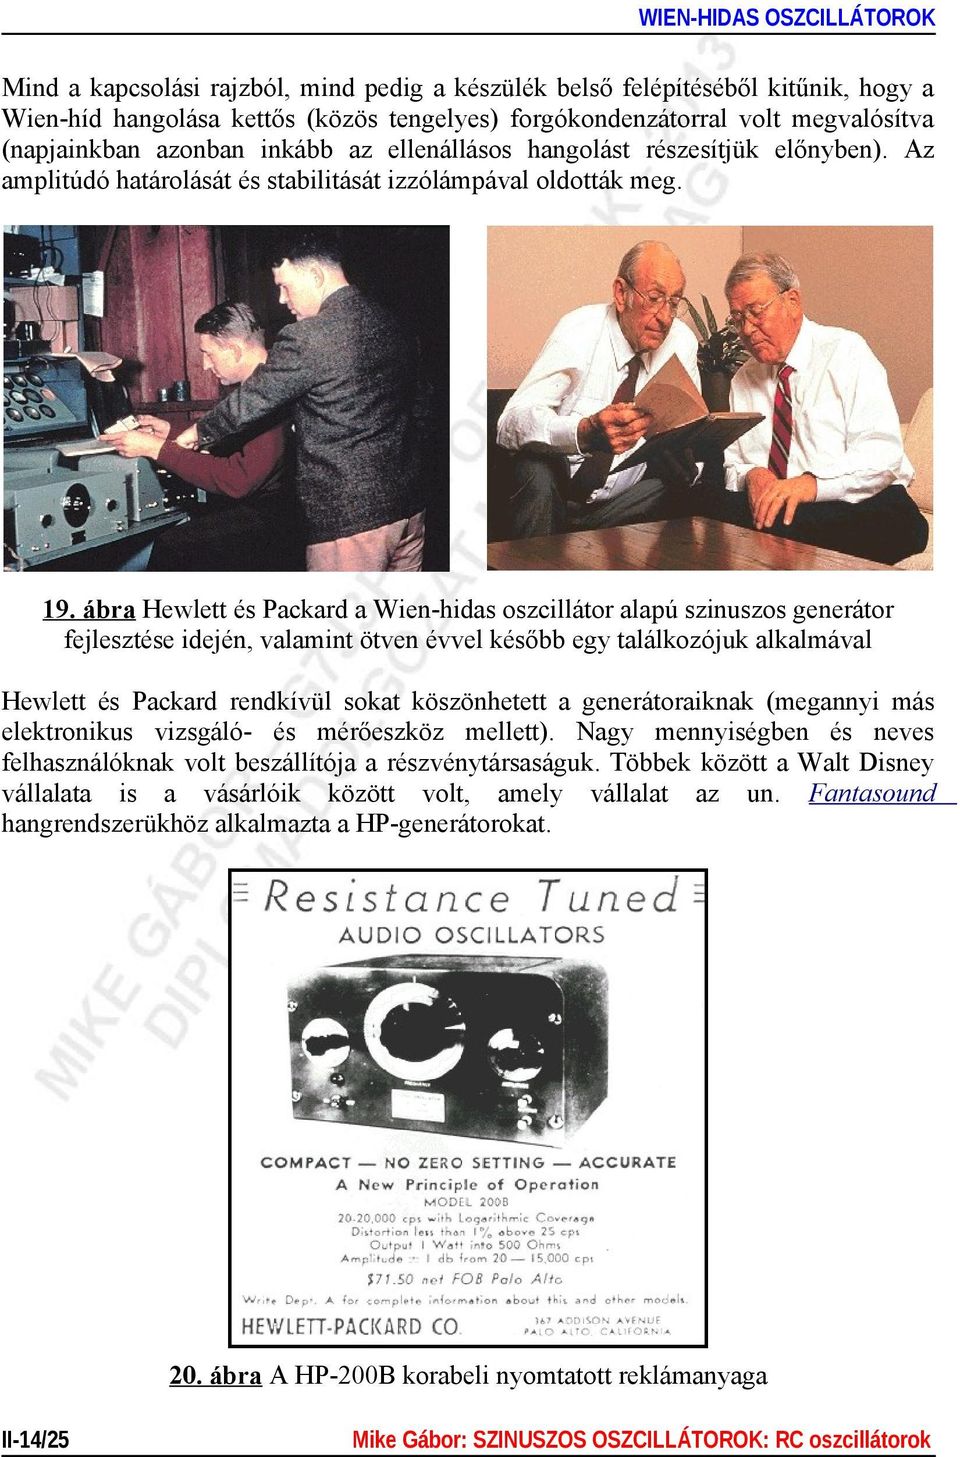 ábra Hewlett és Packard a Wien-hidas oszcillátor alapú szinuszos generátor fejlesztése idején, valamint ötven évvel később egy találkozójuk alkalmával Hewlett és Packard rendkívül sokat köszönhetett